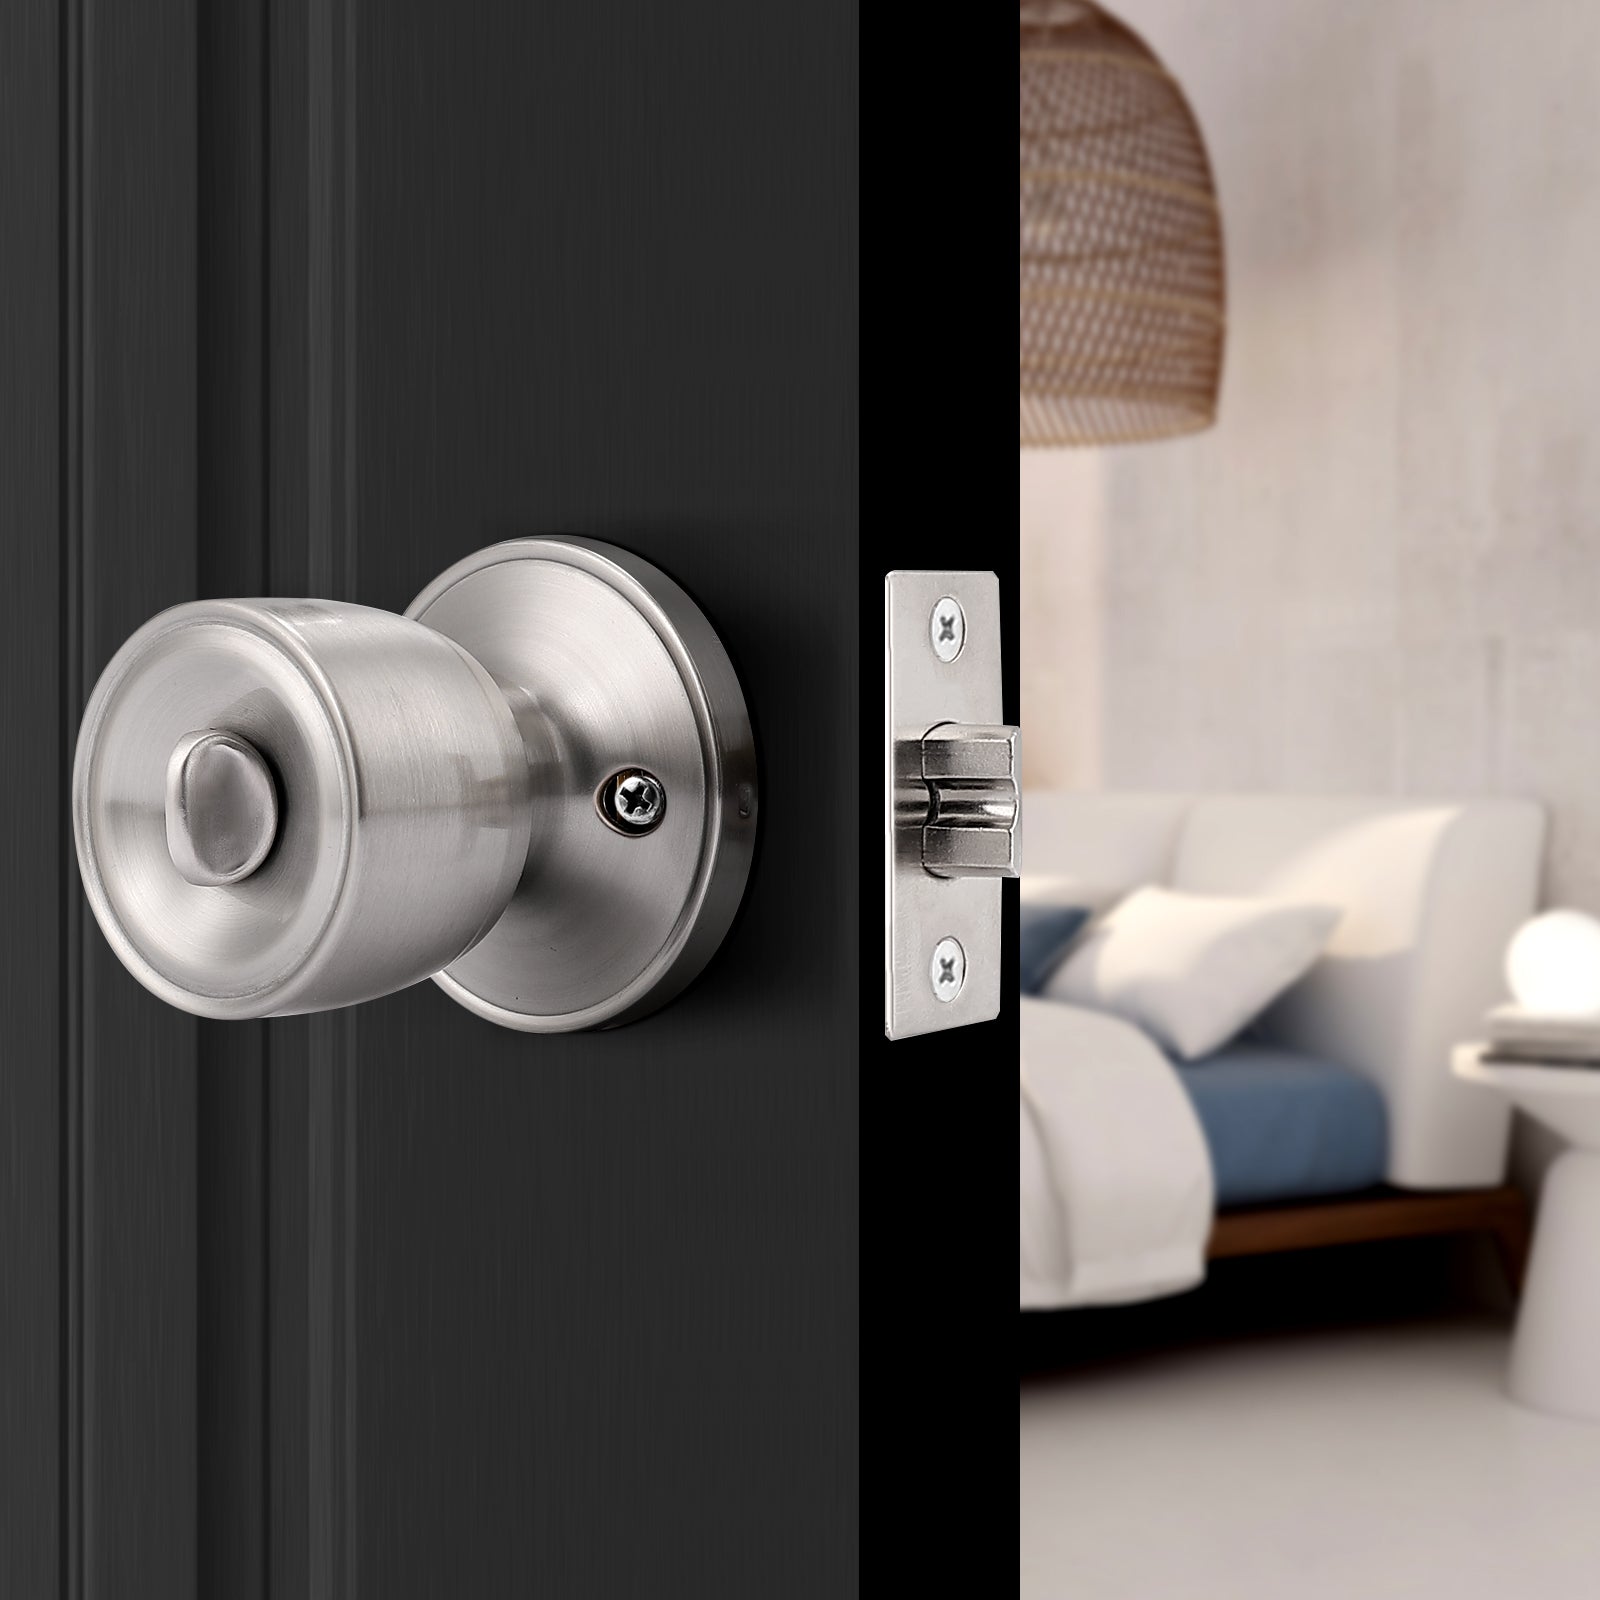 Tulip Style Door Knob, Privacy Door Lock for Bedroom Bathroom Satin Nickel Finish DL591SNBK